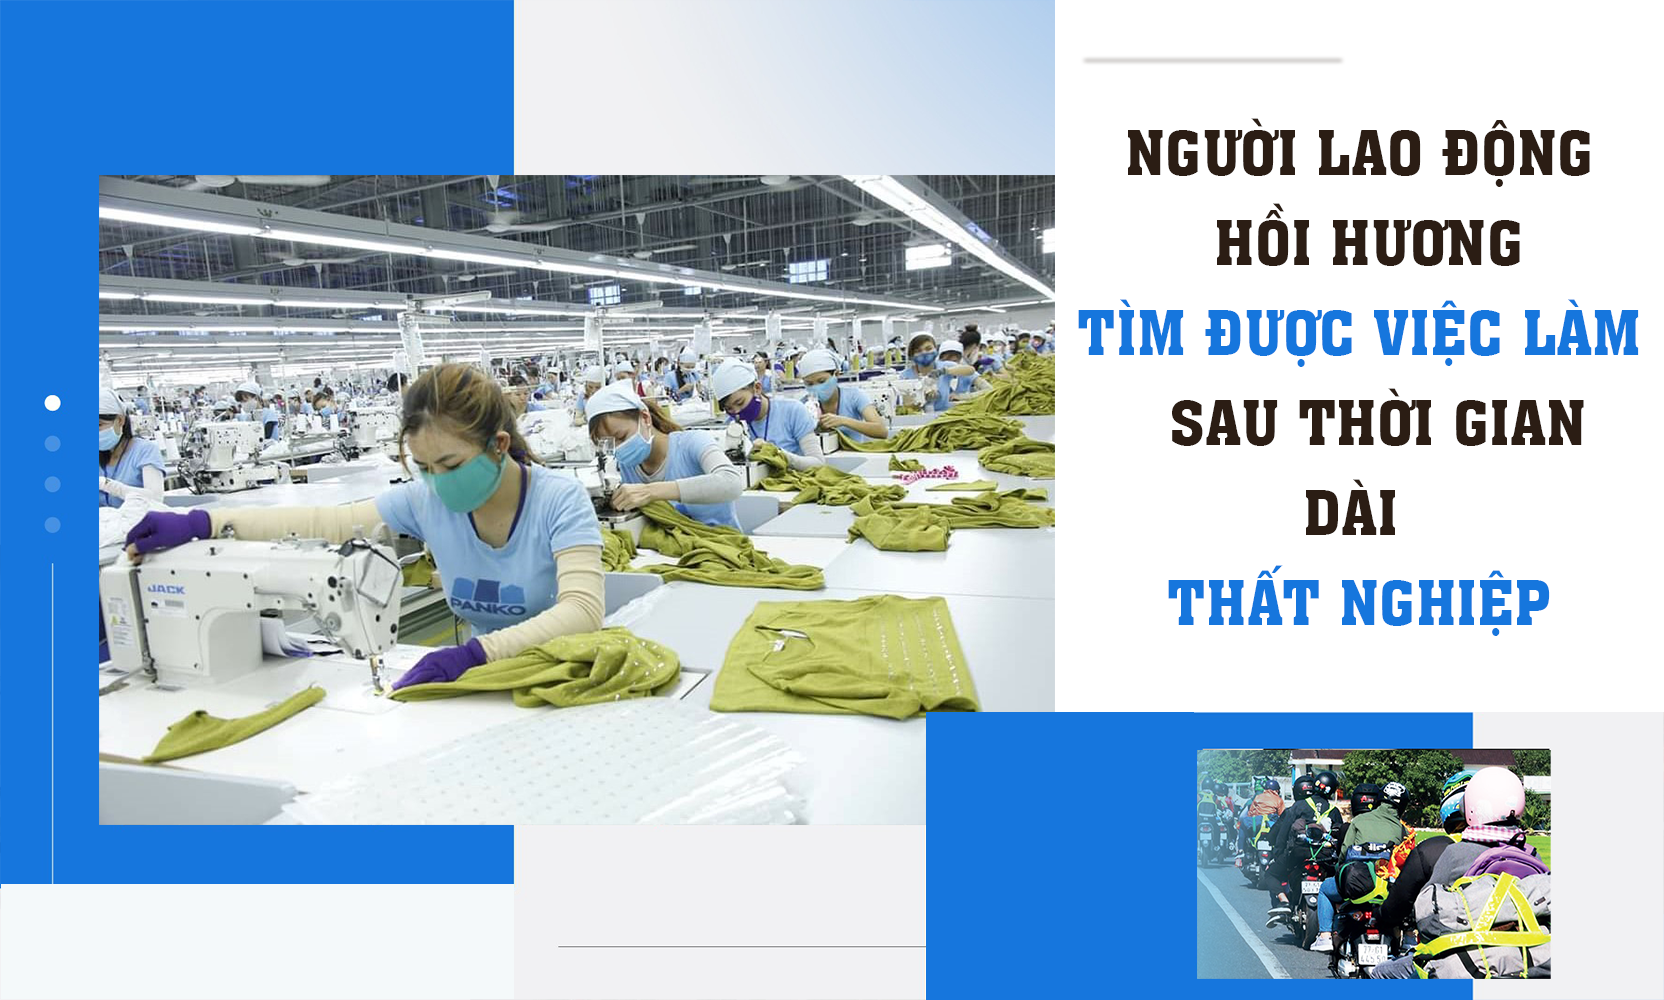 Người lao động Quảng Nam hồi hương tìm được việc làm sau thời gian dài thất nghiệp